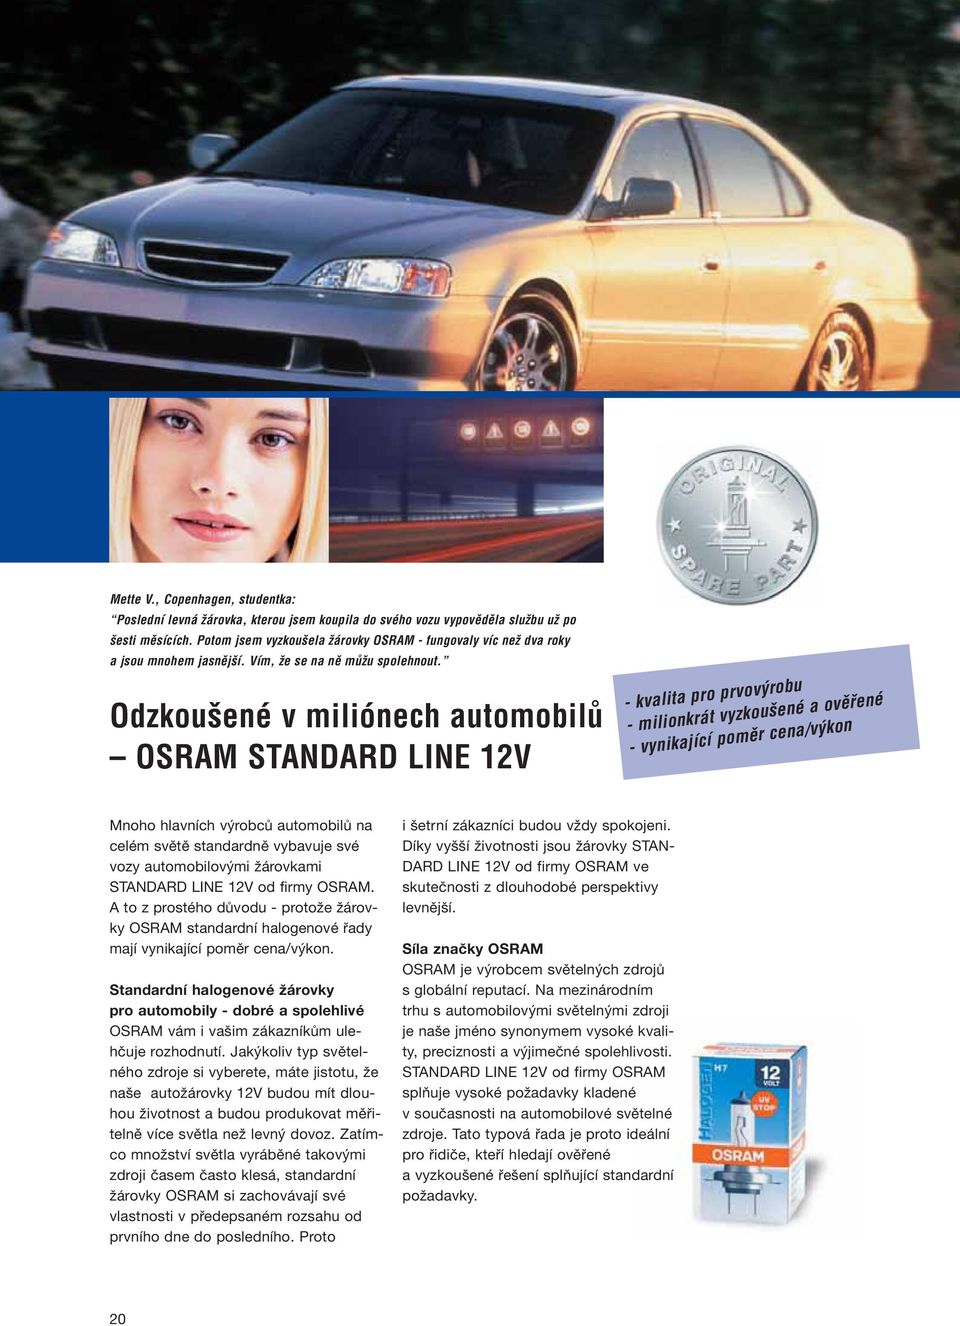 Odzkou ené v miliónech automobilû OSRAM STANDARD LINE 12V - kvalita pro prvov robu - milionkrát vyzkou ené a ovûfiené - vynikající pomûr cena/v kon Mnoho hlavních výrobců automobilů na celém světě